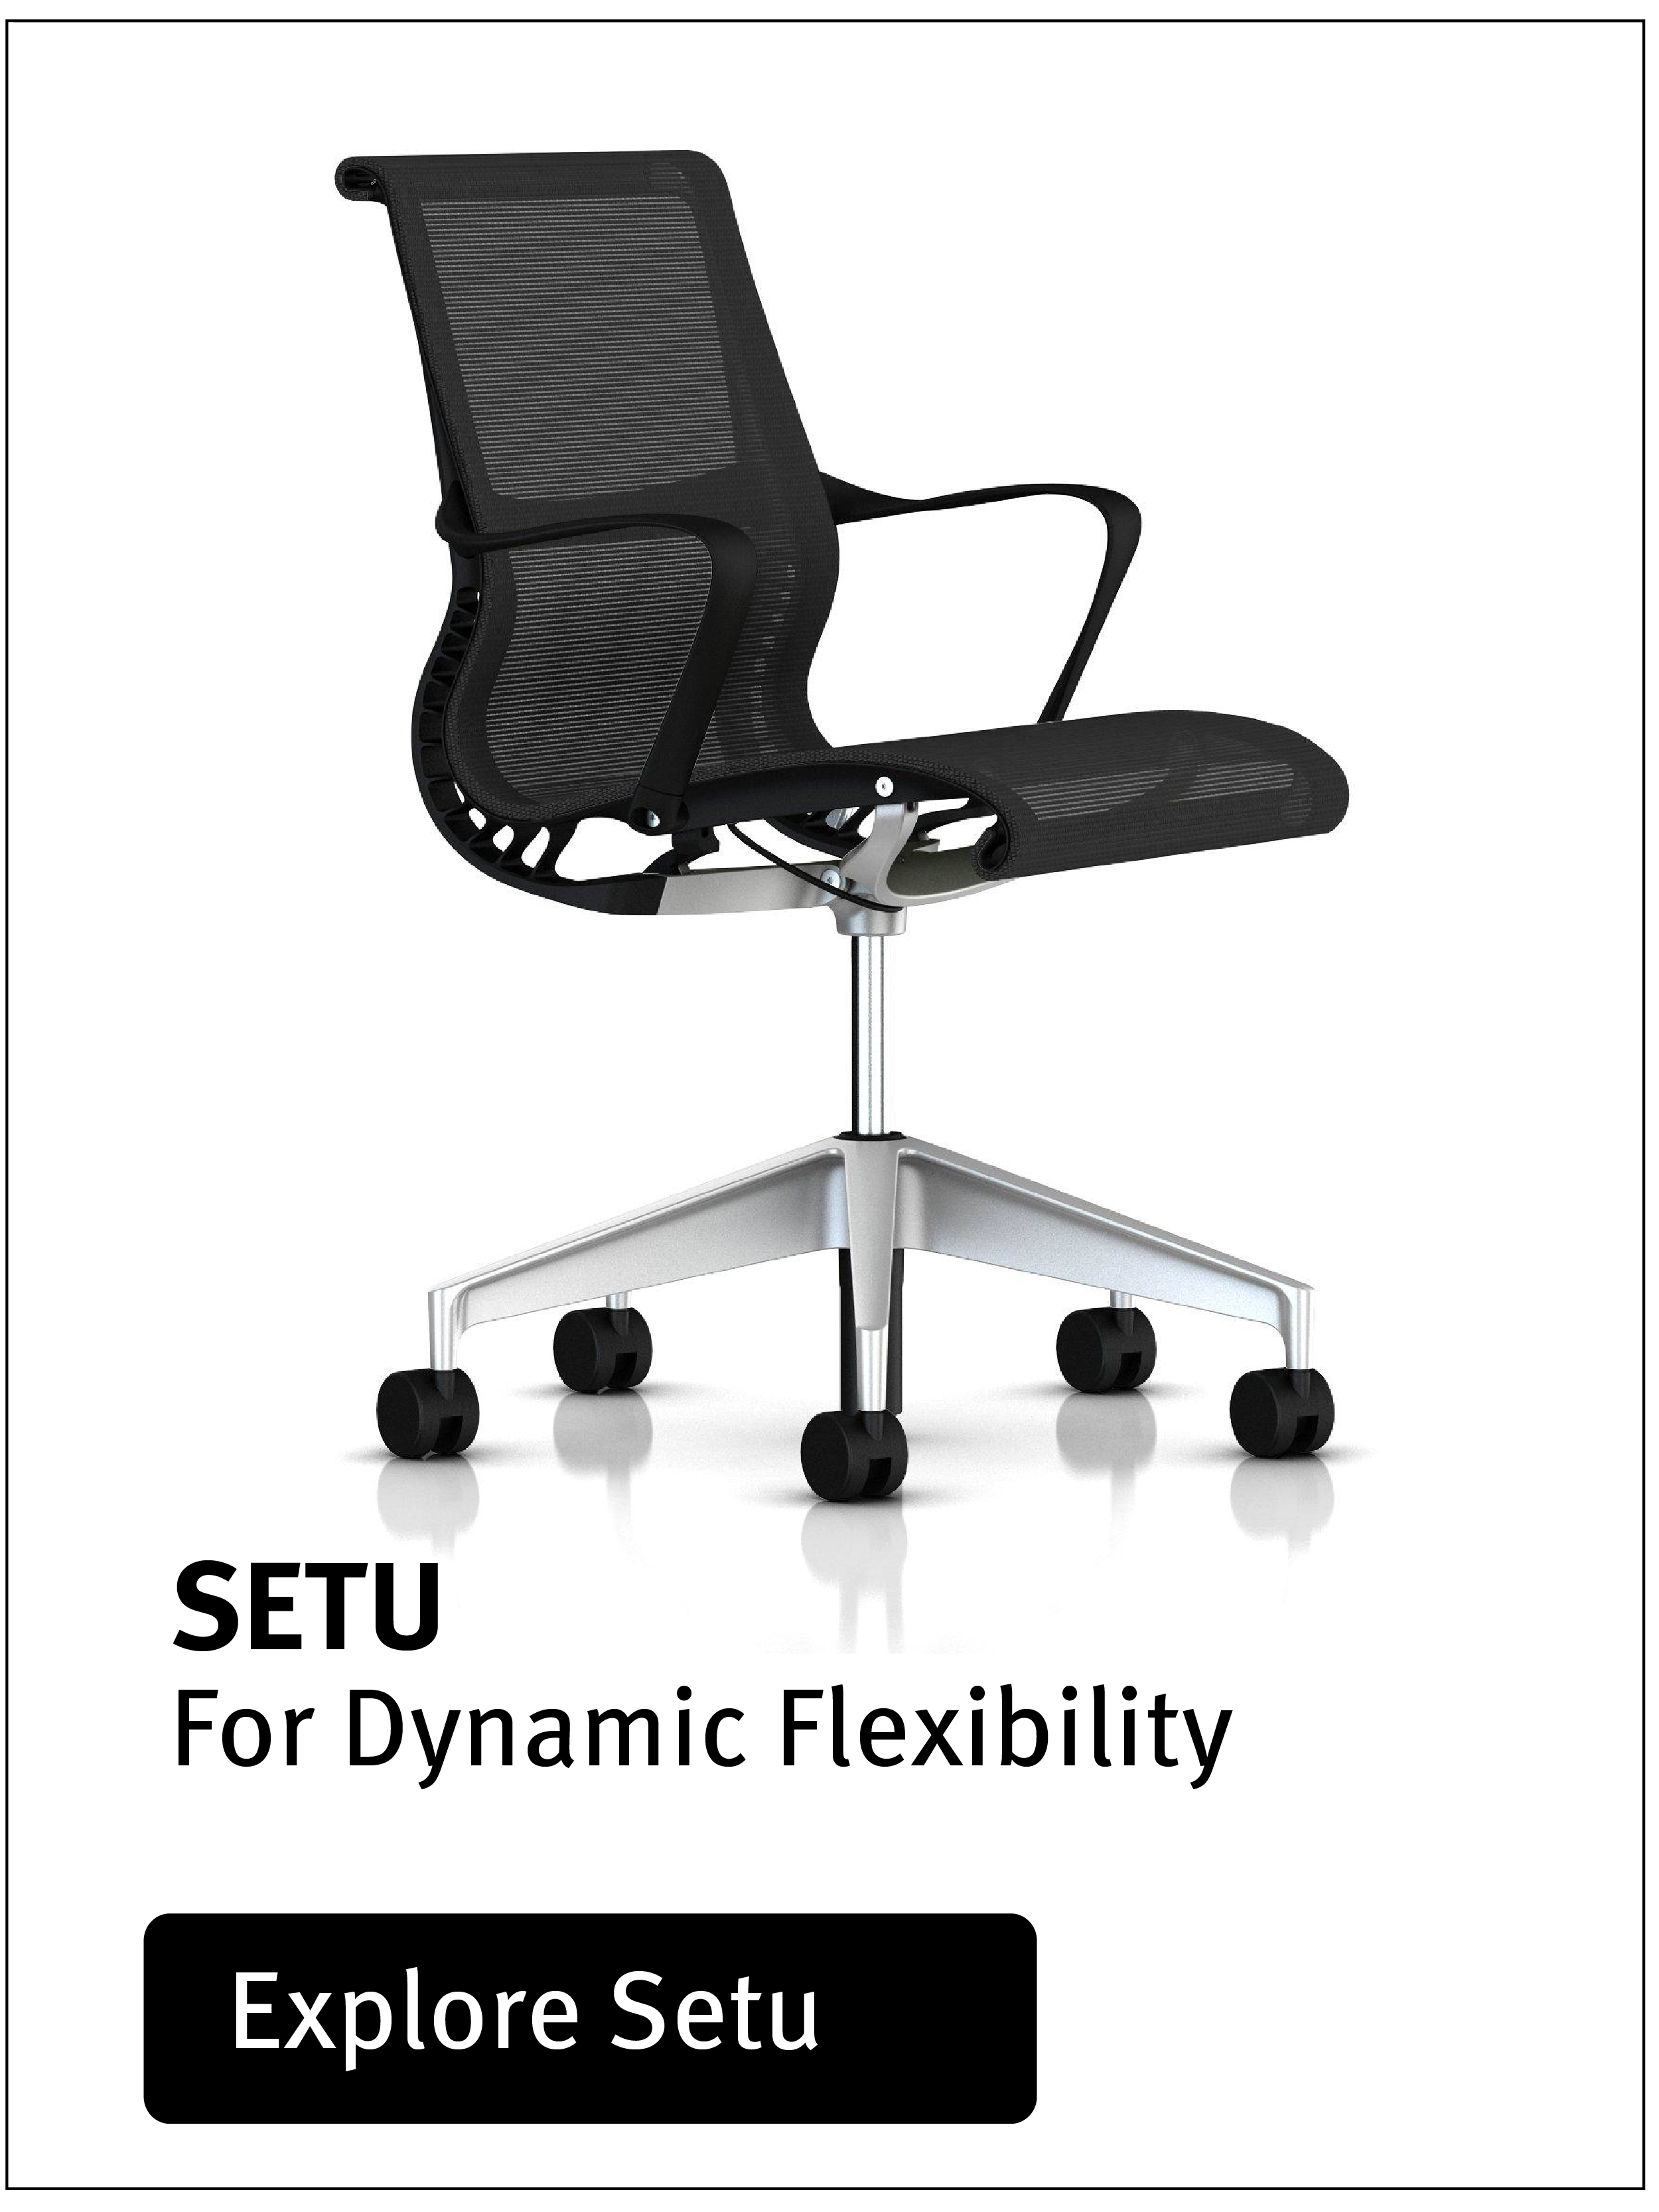 Setu chair by Herman Miller